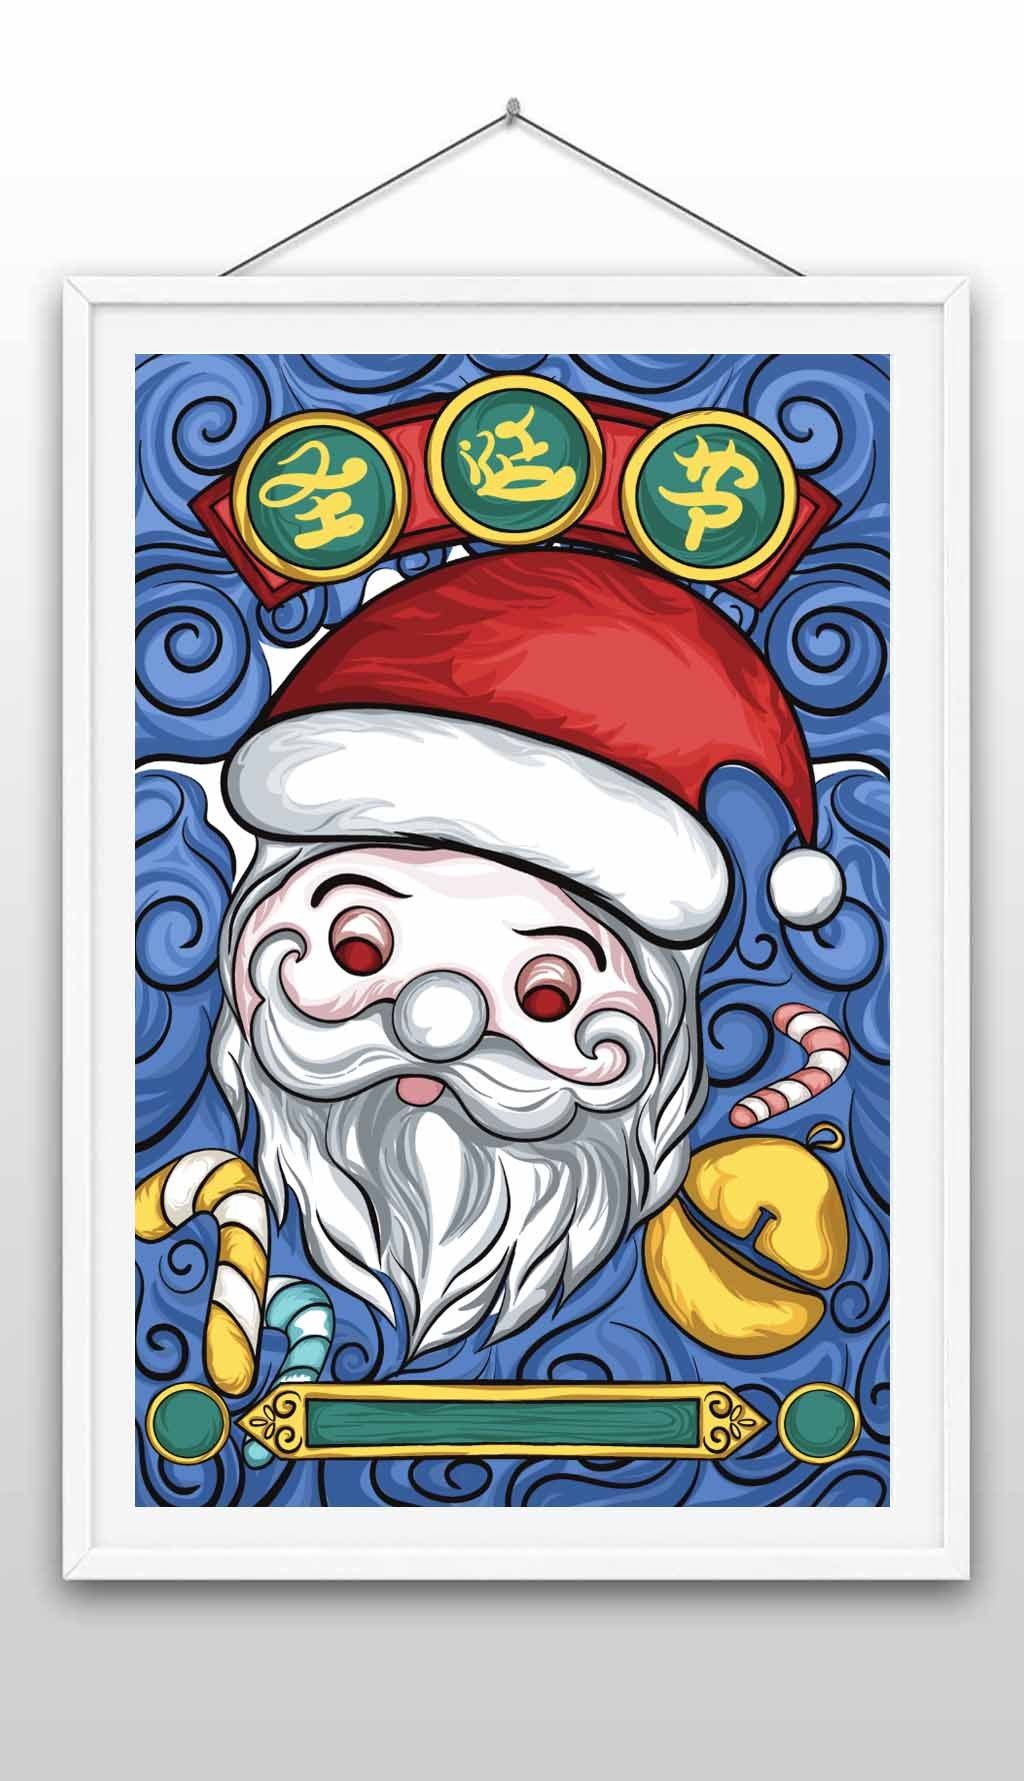 您当前访问作品主题是国潮圣诞节手绘插画海报,编号是27848699,可商用